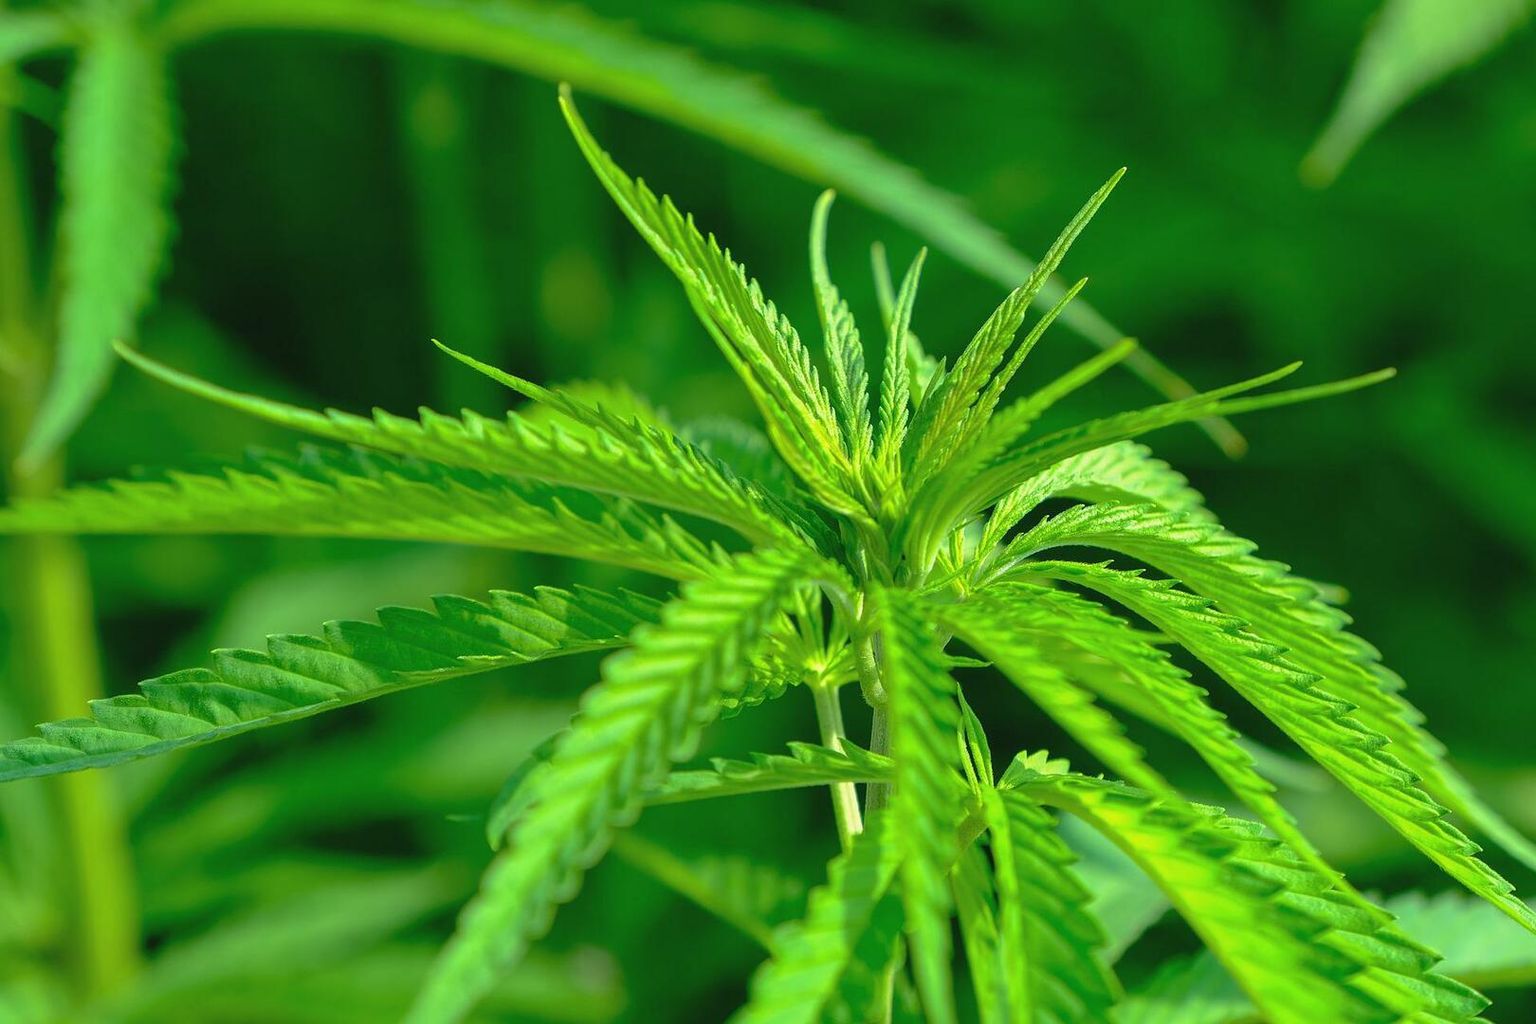 Primo piano di una pianta di cannabis